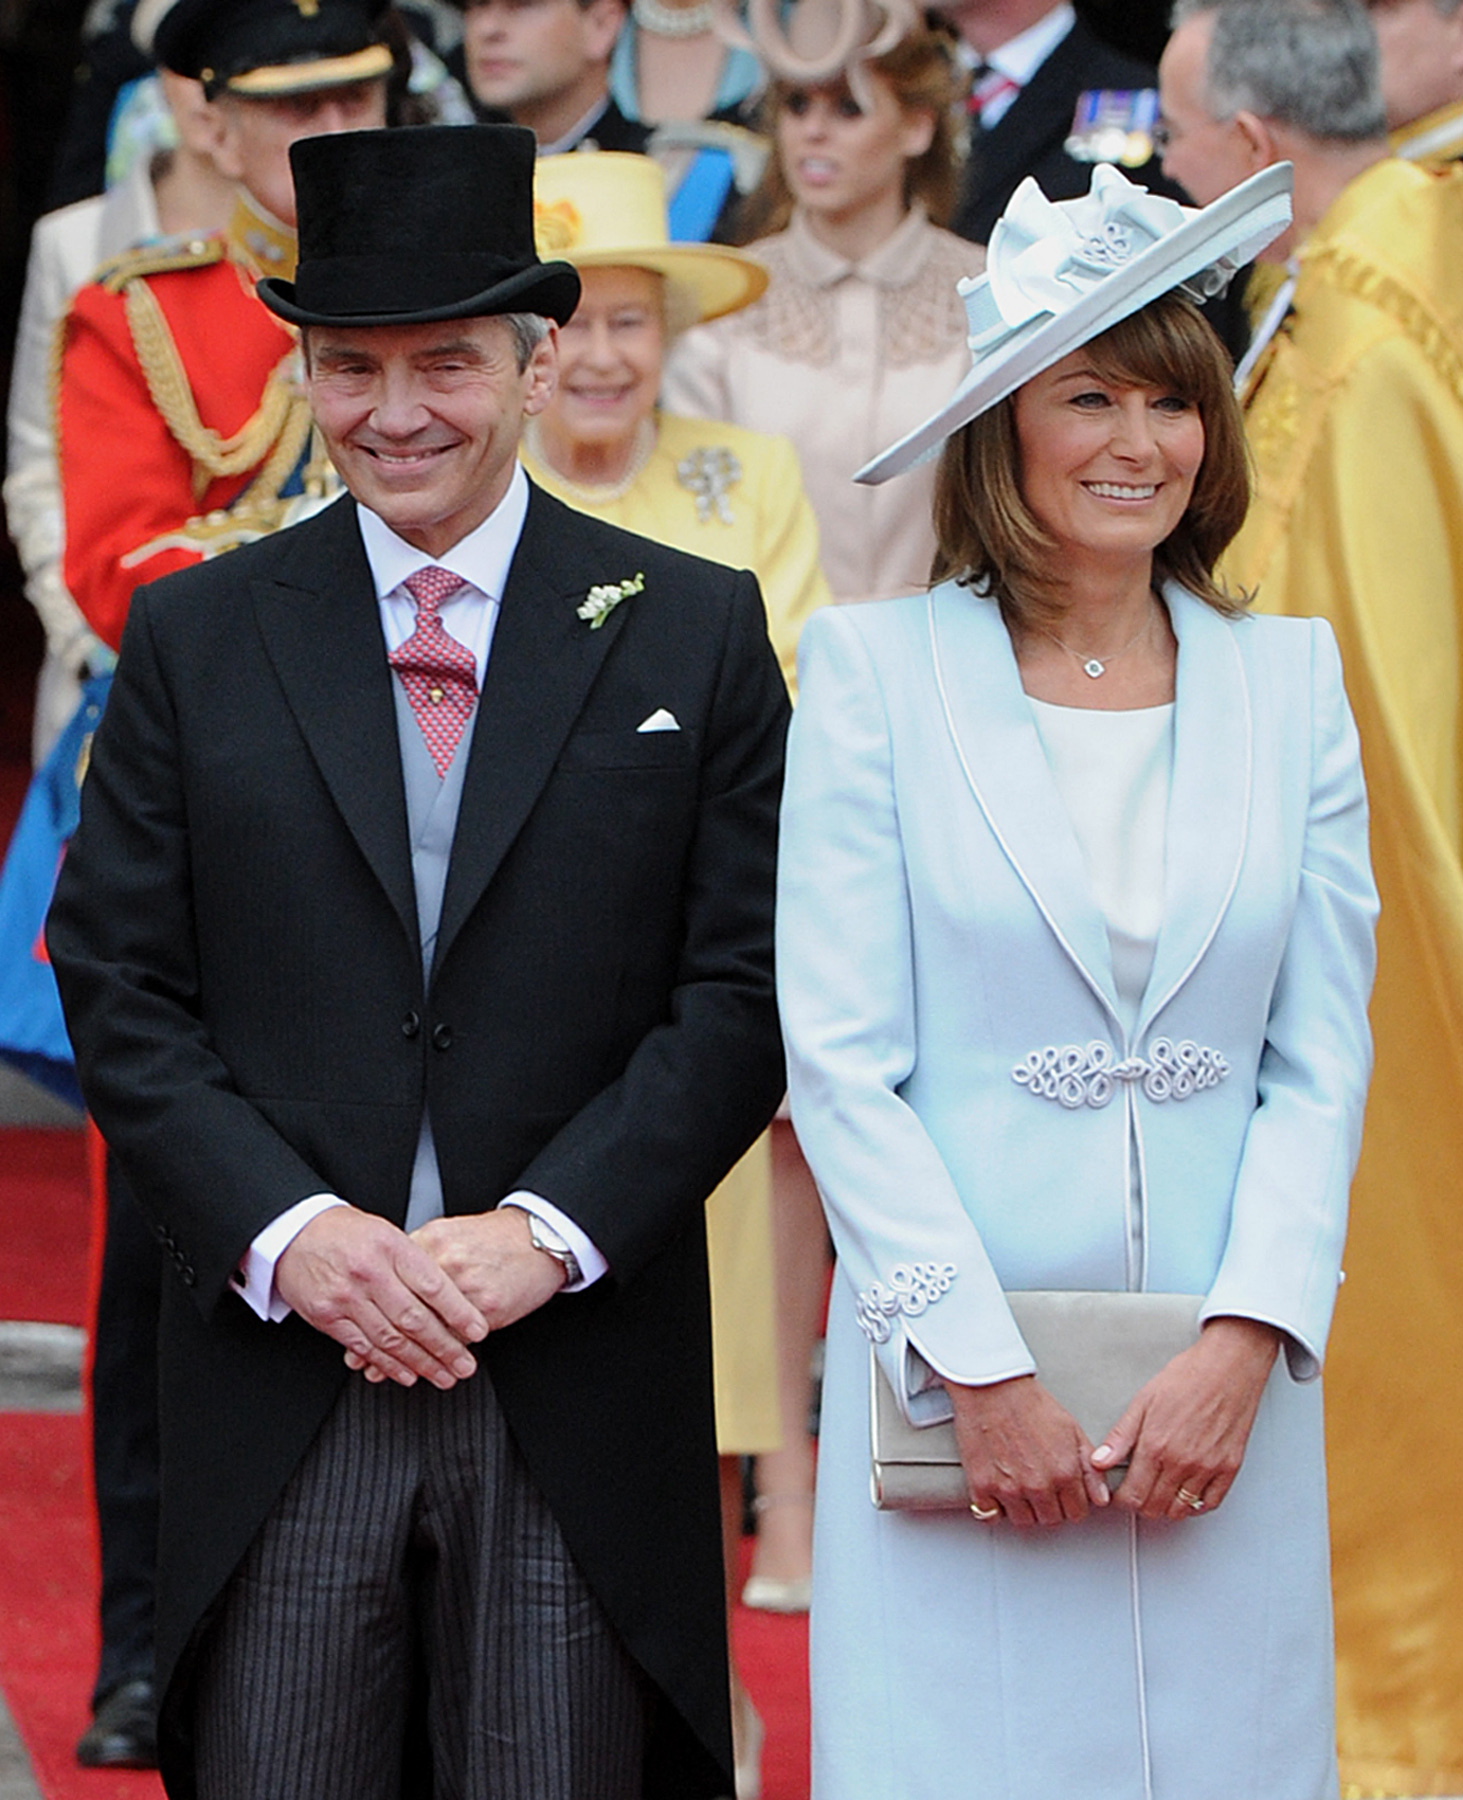 Michael Middleton und Carole Middleton bei der Hochzeit des Prinzen und der Prinzessin von Wales in London im Jahr 2011 | Quelle: Getty Images